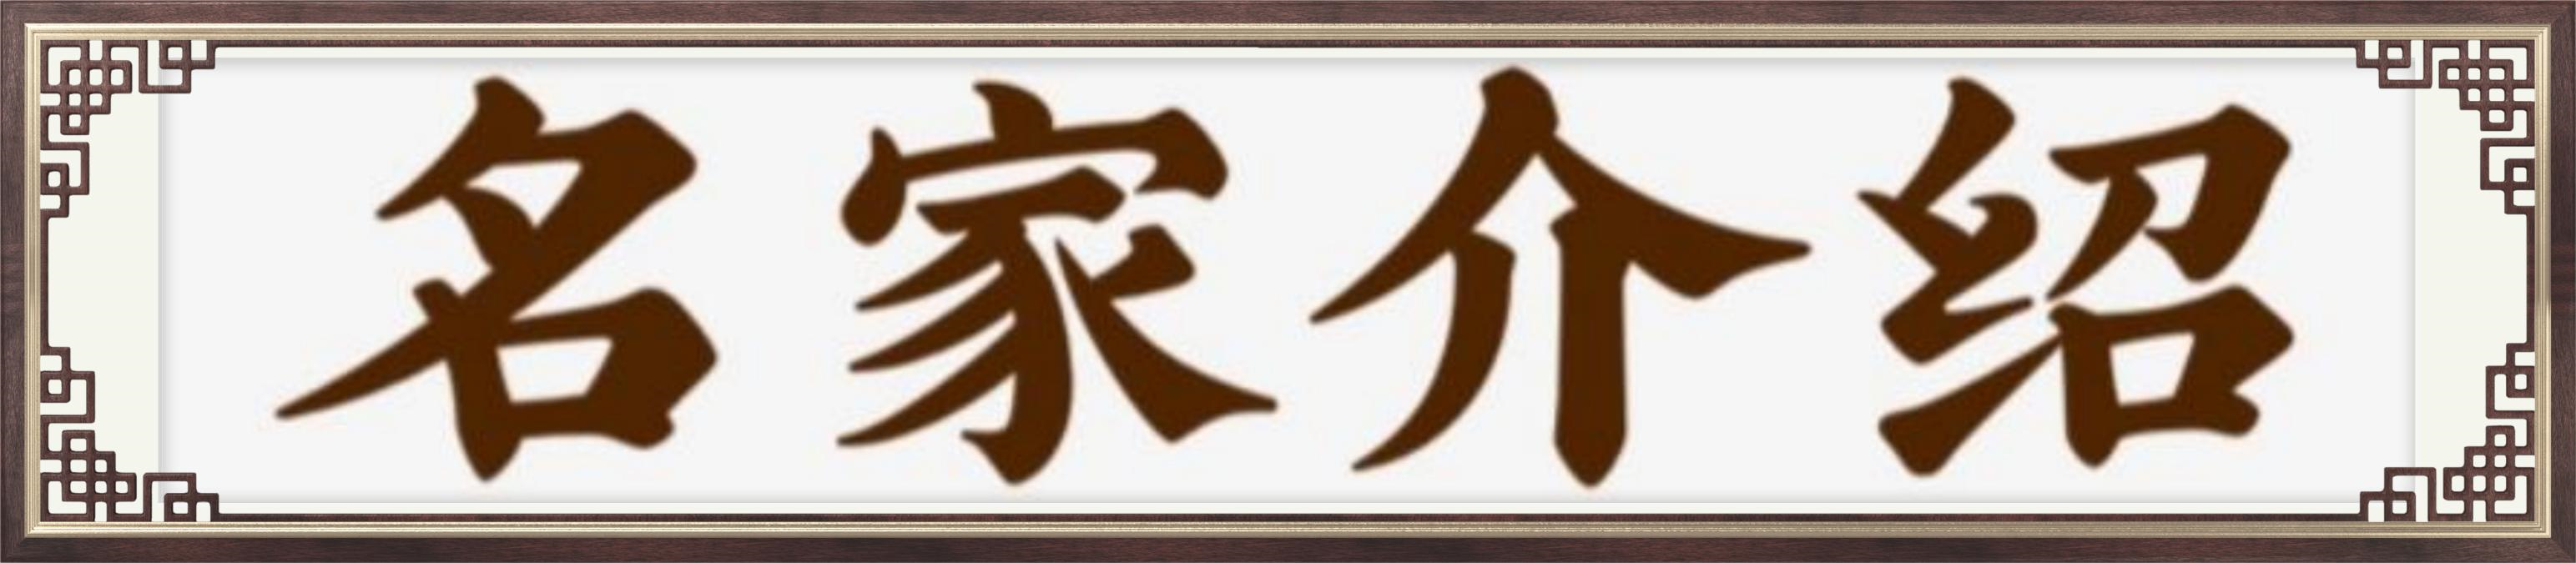 中国艺术传承形象大使司徒惠霞——献礼建军95周年-赤峰家居网